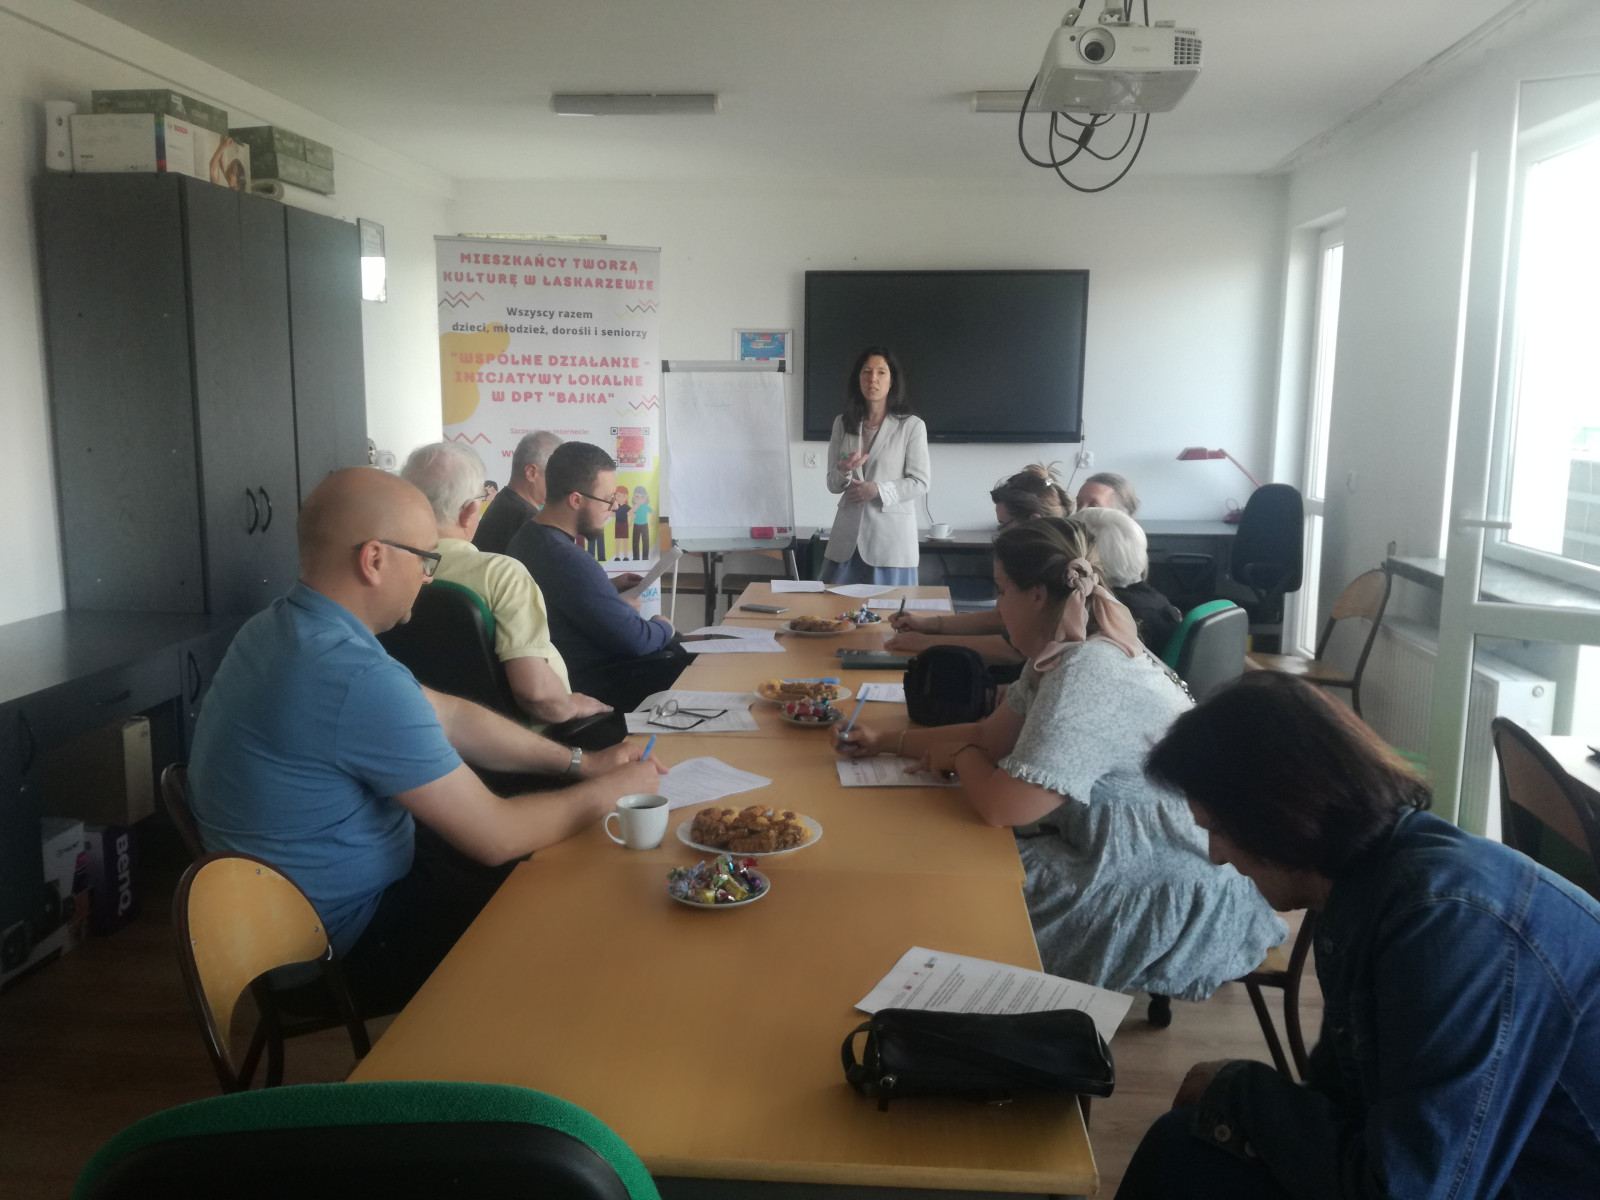  "Wspólne działanie - inicjatywy lokalne w DPT "Bajka" 